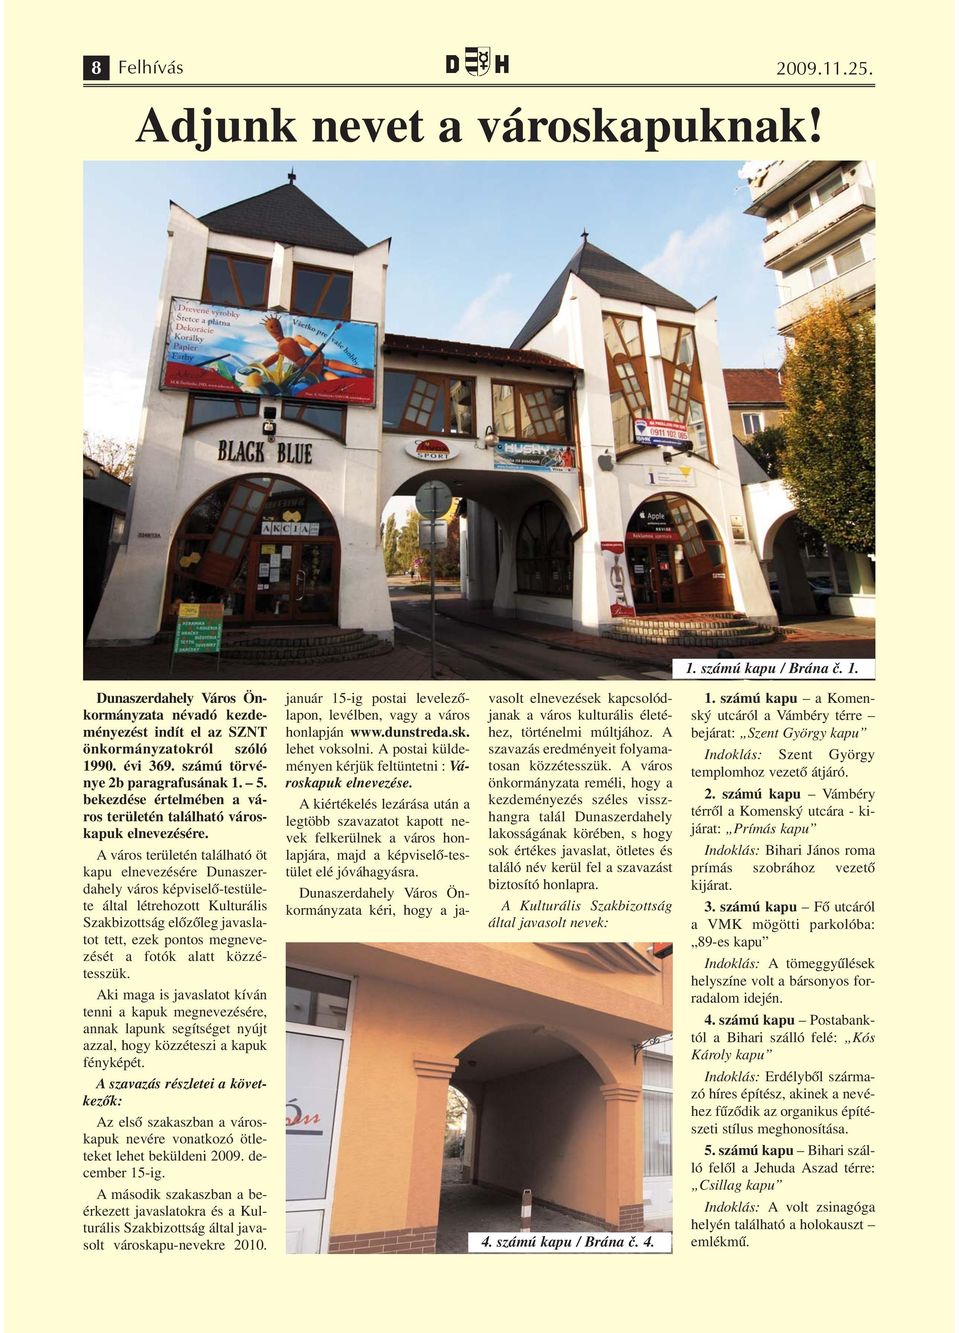 A város területén található öt kapu elnevezésére Dunaszerdahely város képviselő-testülete által létrehozott Kulturális Szakbizottság előzőleg javaslatot tett, ezek pontos megnevezését a fotók alatt